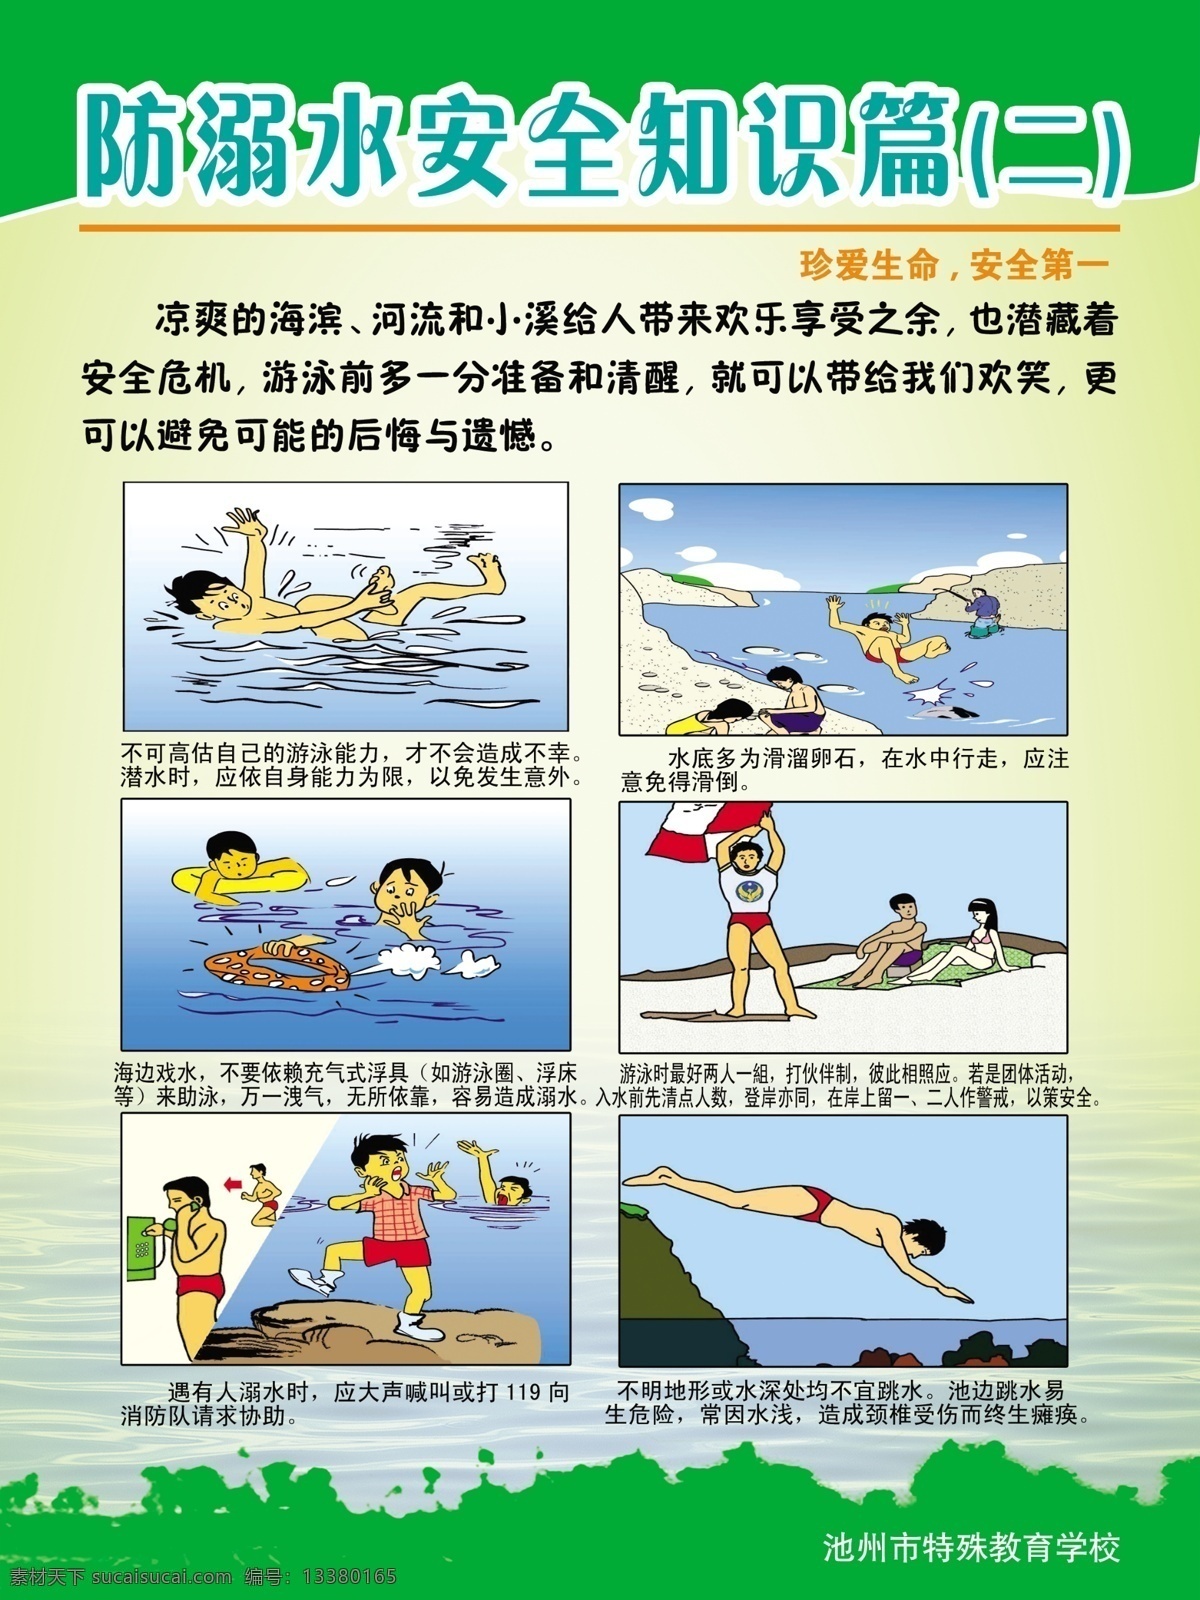 防 溺水 安全 知识 展板 防溺水 安全守则 游泳 漫画 展板模板 广告设计模板 源文件 psd素材 白色